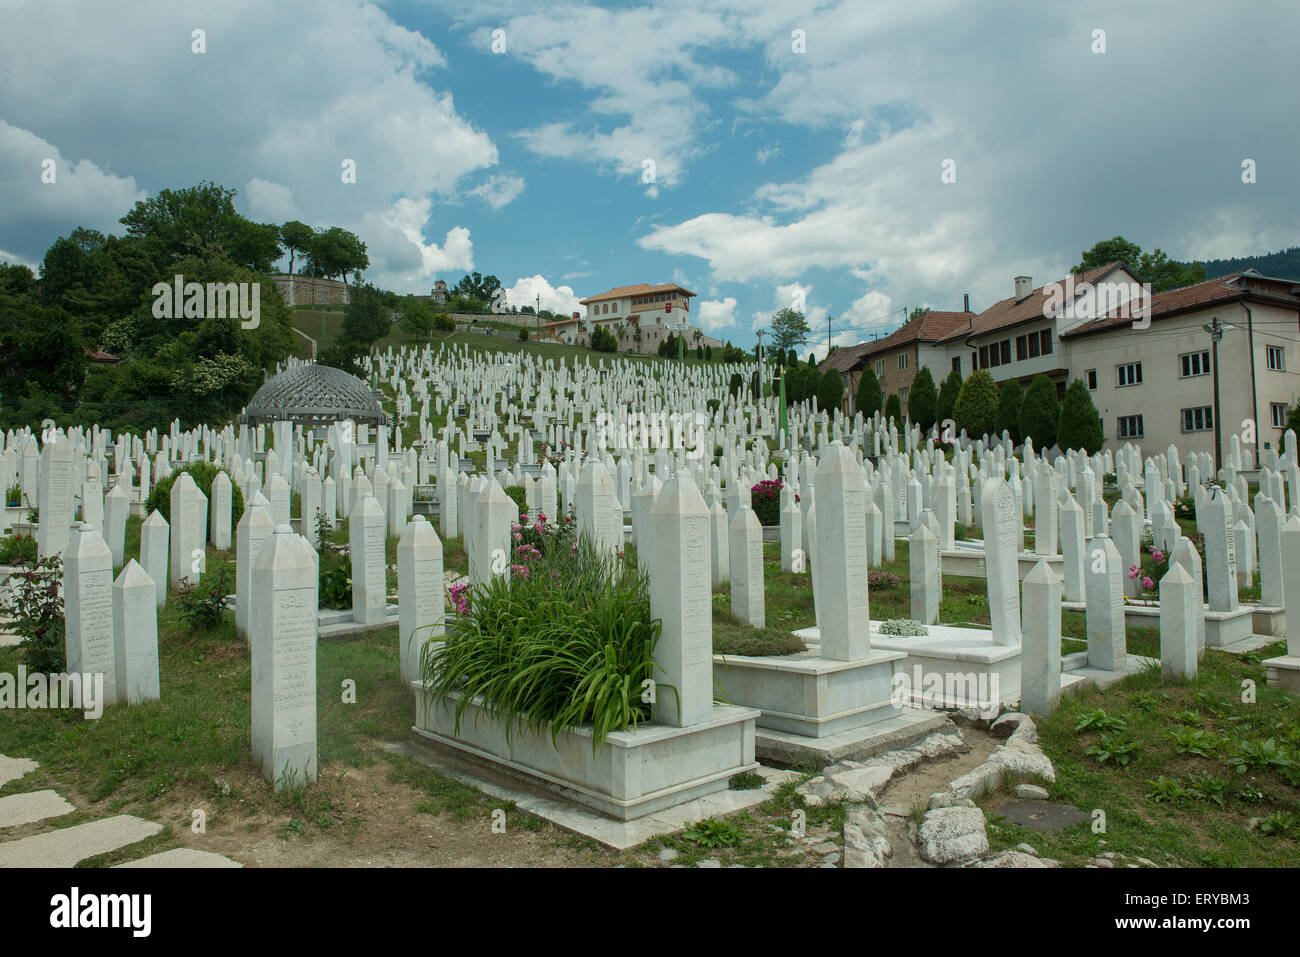 Muslim cemetery of Kovaci in Sarajevo Stock Photo